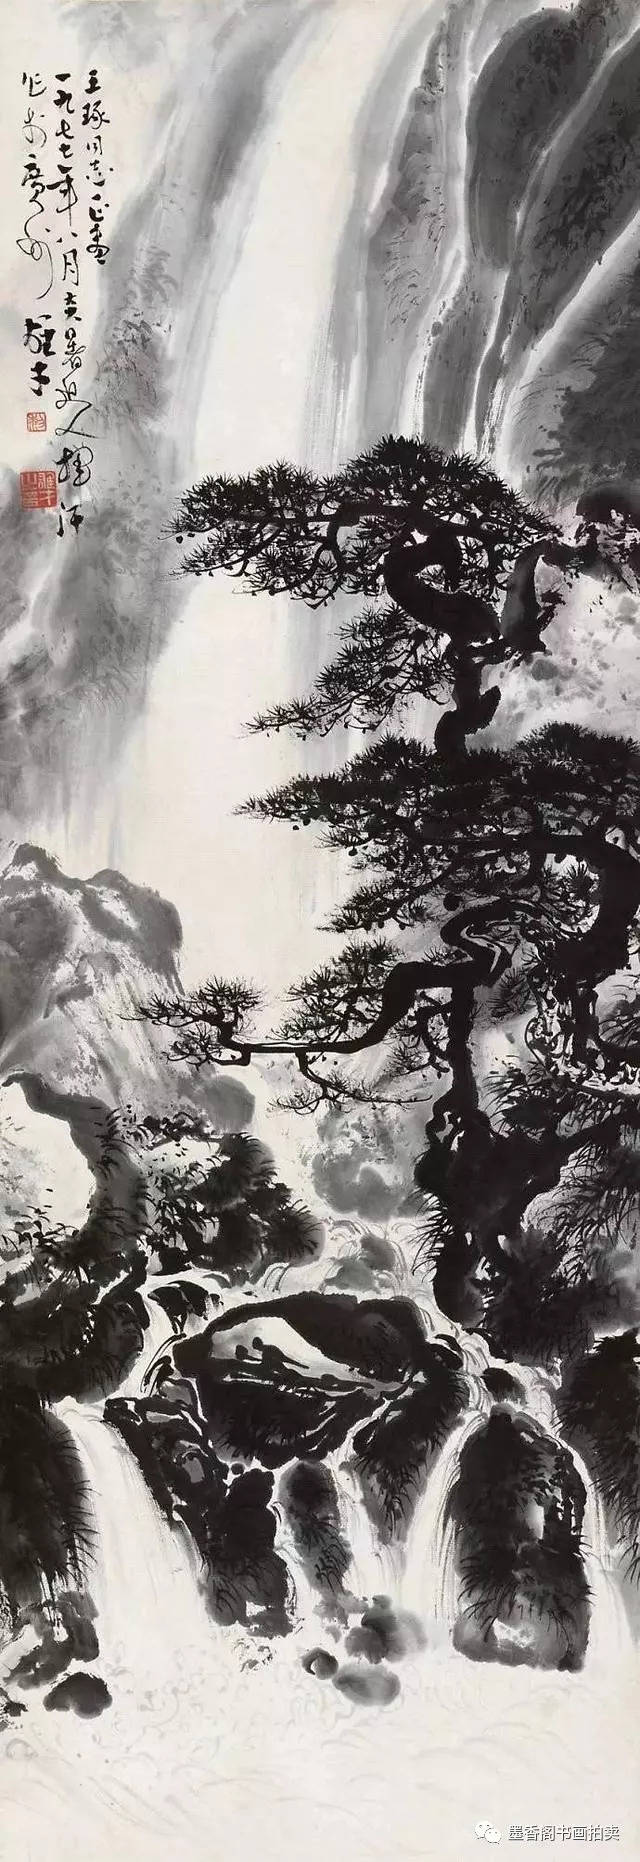 黎雄才气魄的松树山水画,意境很美(80幅)